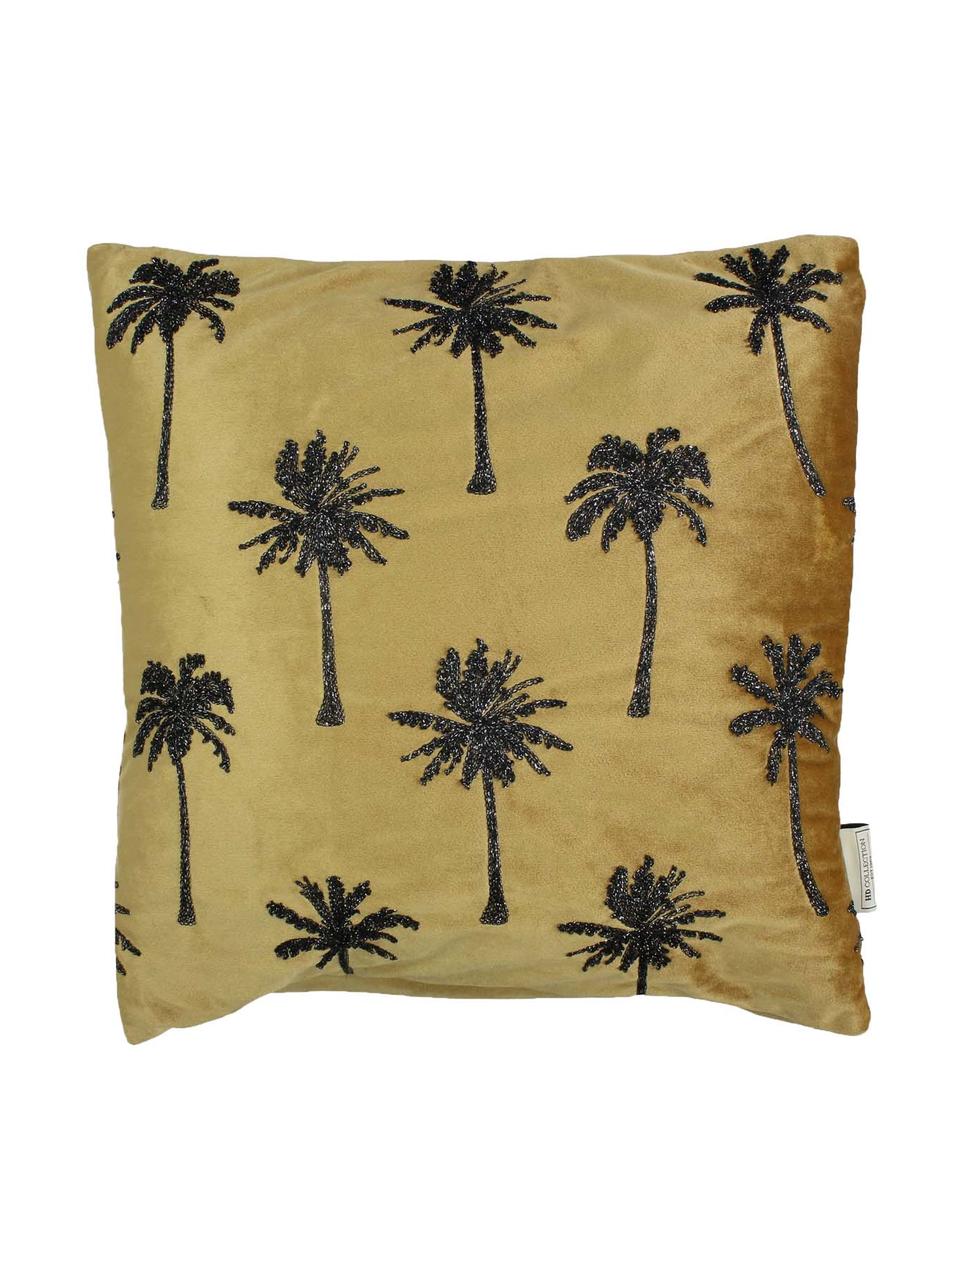 Samt-Kissen Palm Tree mit glänzender Bestickung, mit Inlett, Samt, Goldfarben, Schwarz, 45 x 45 cm